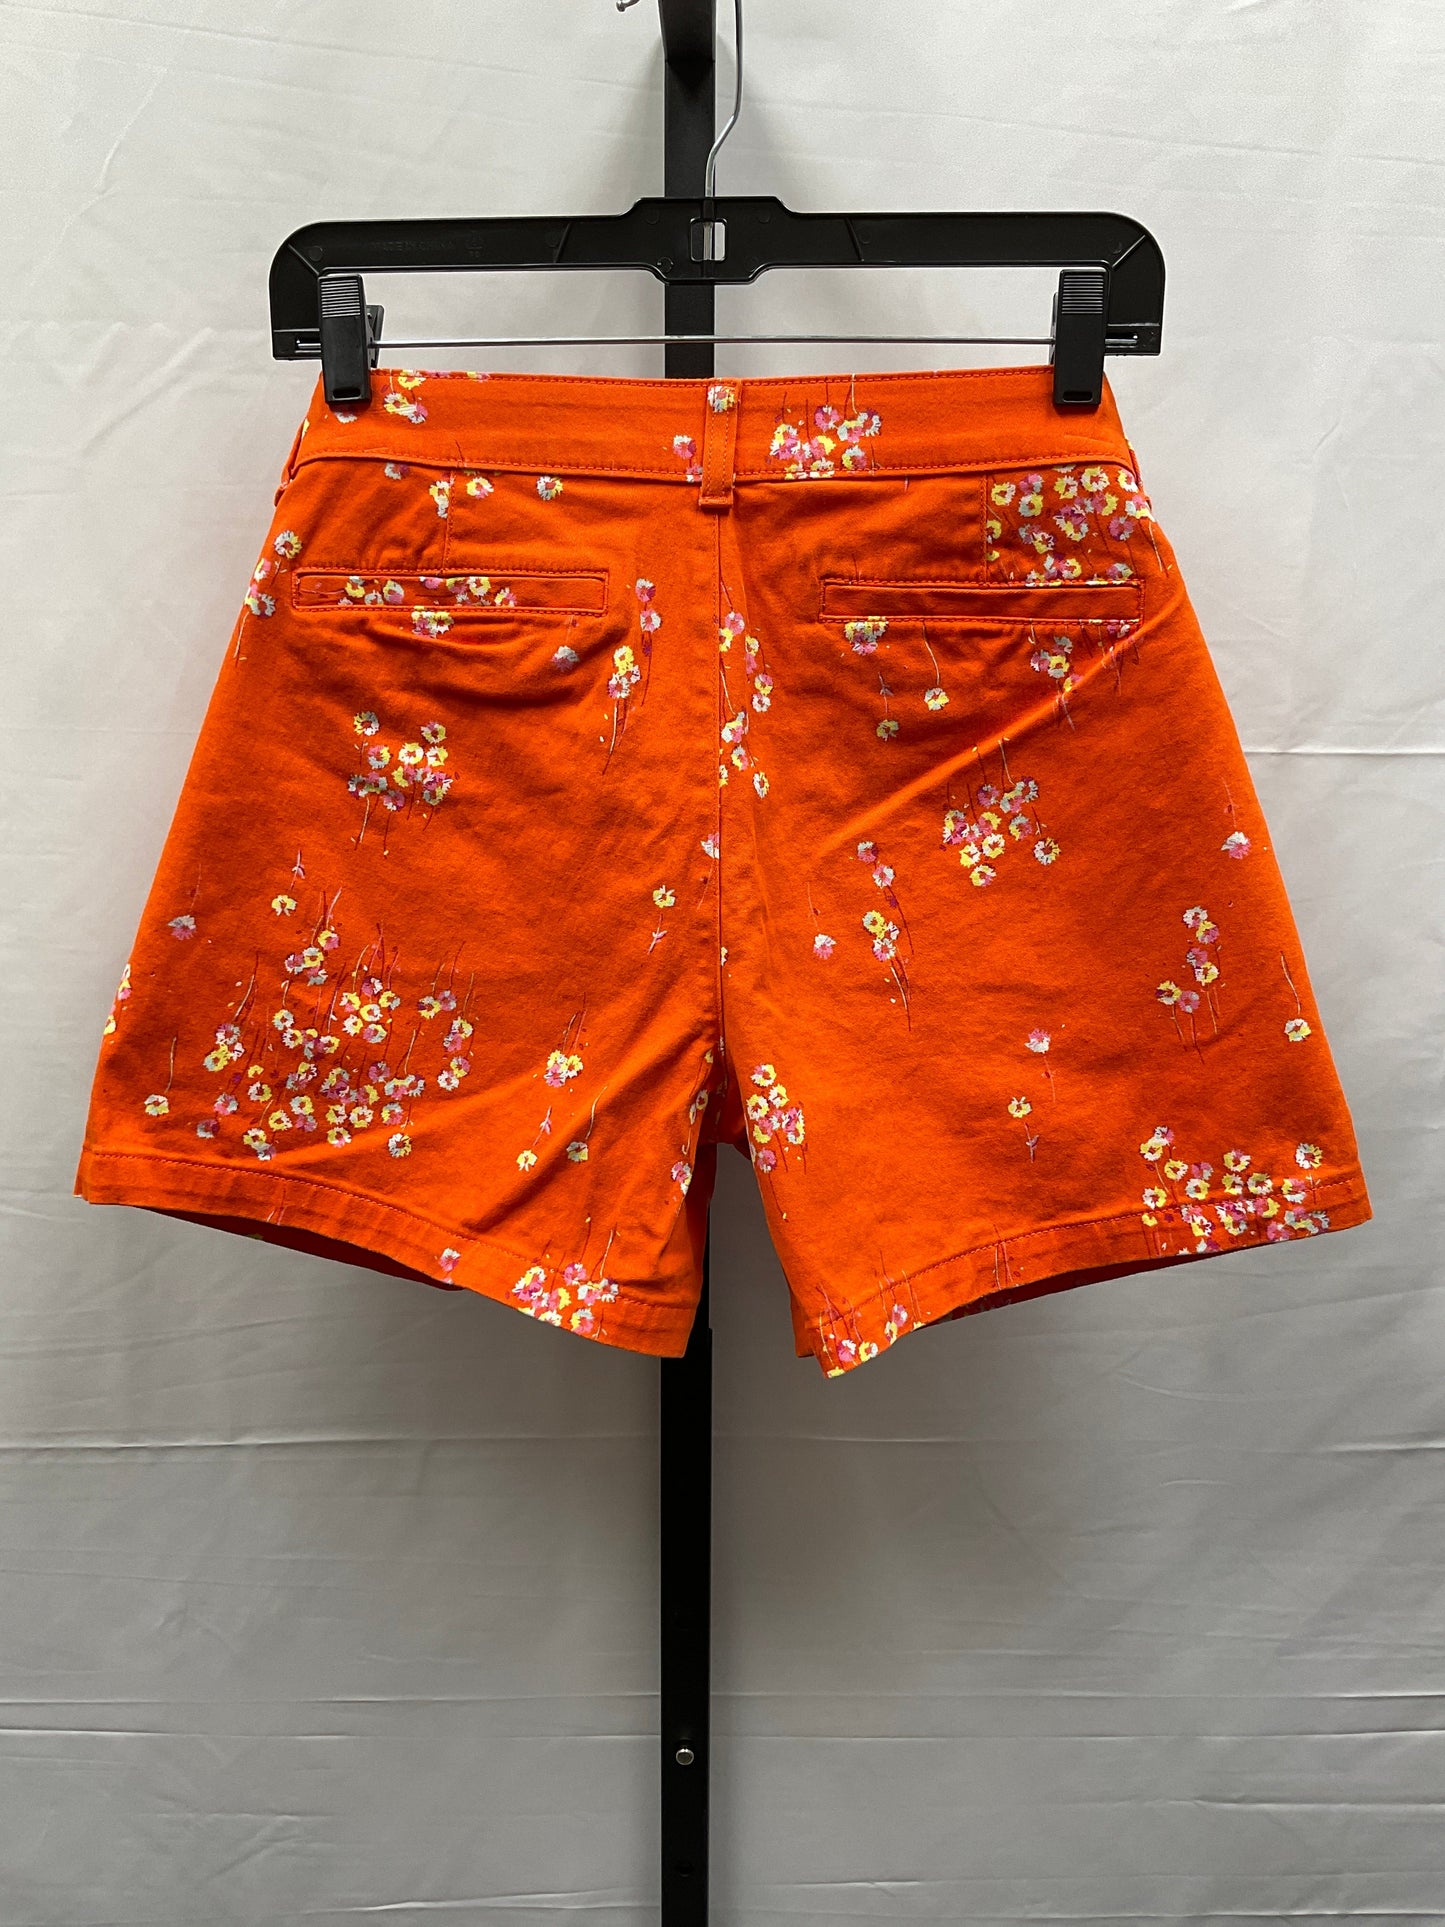 Orange Shorts Ana, Size 10